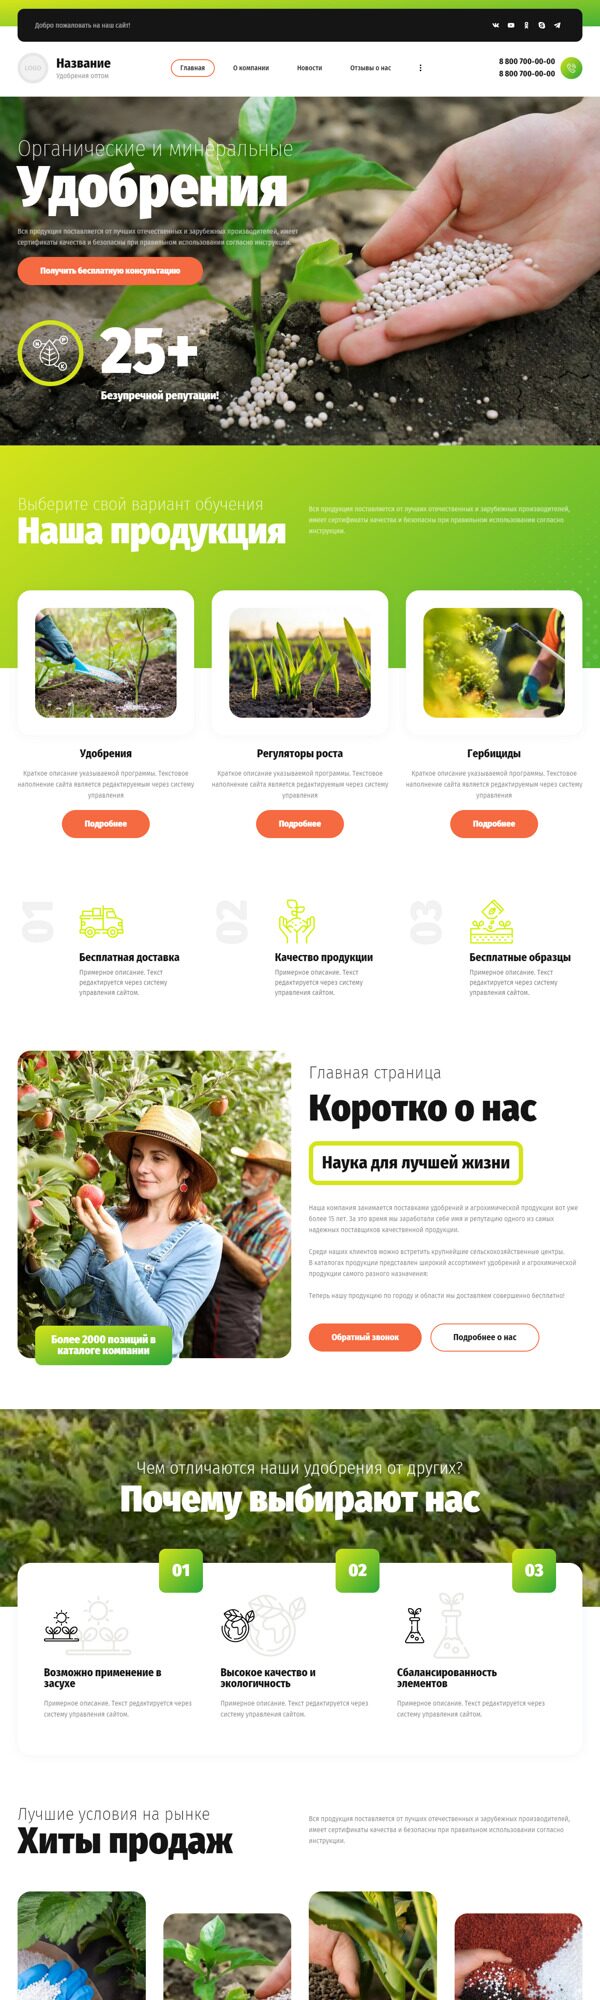 Готовый Сайт-Бизнес № 4001265 - Удобрения и агрохимические продукты (Десктопная версия)